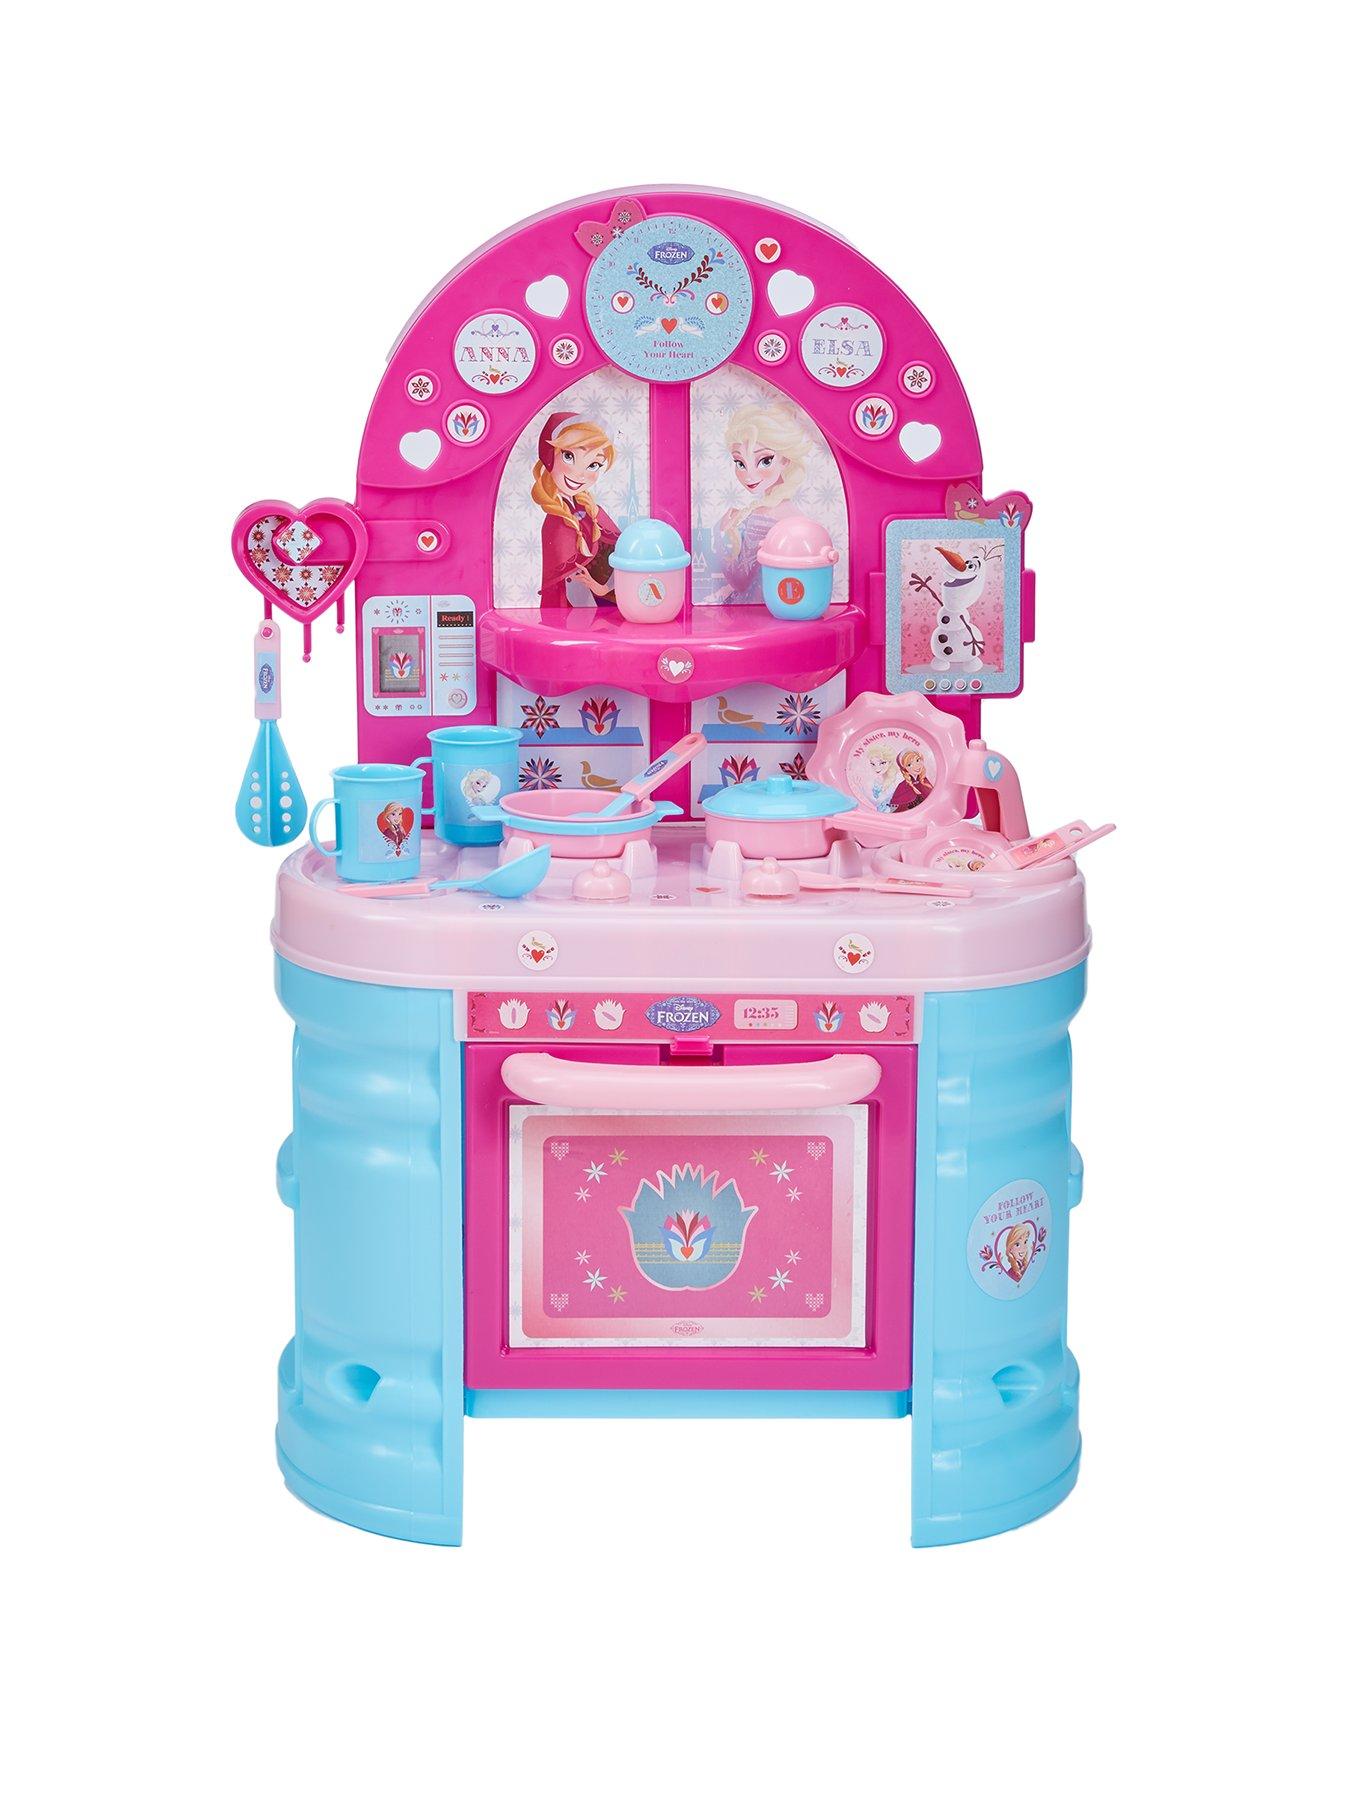 Frozen Disney 19 Pieces Children's Full Kitchen Set with Accessories Bildo Toy